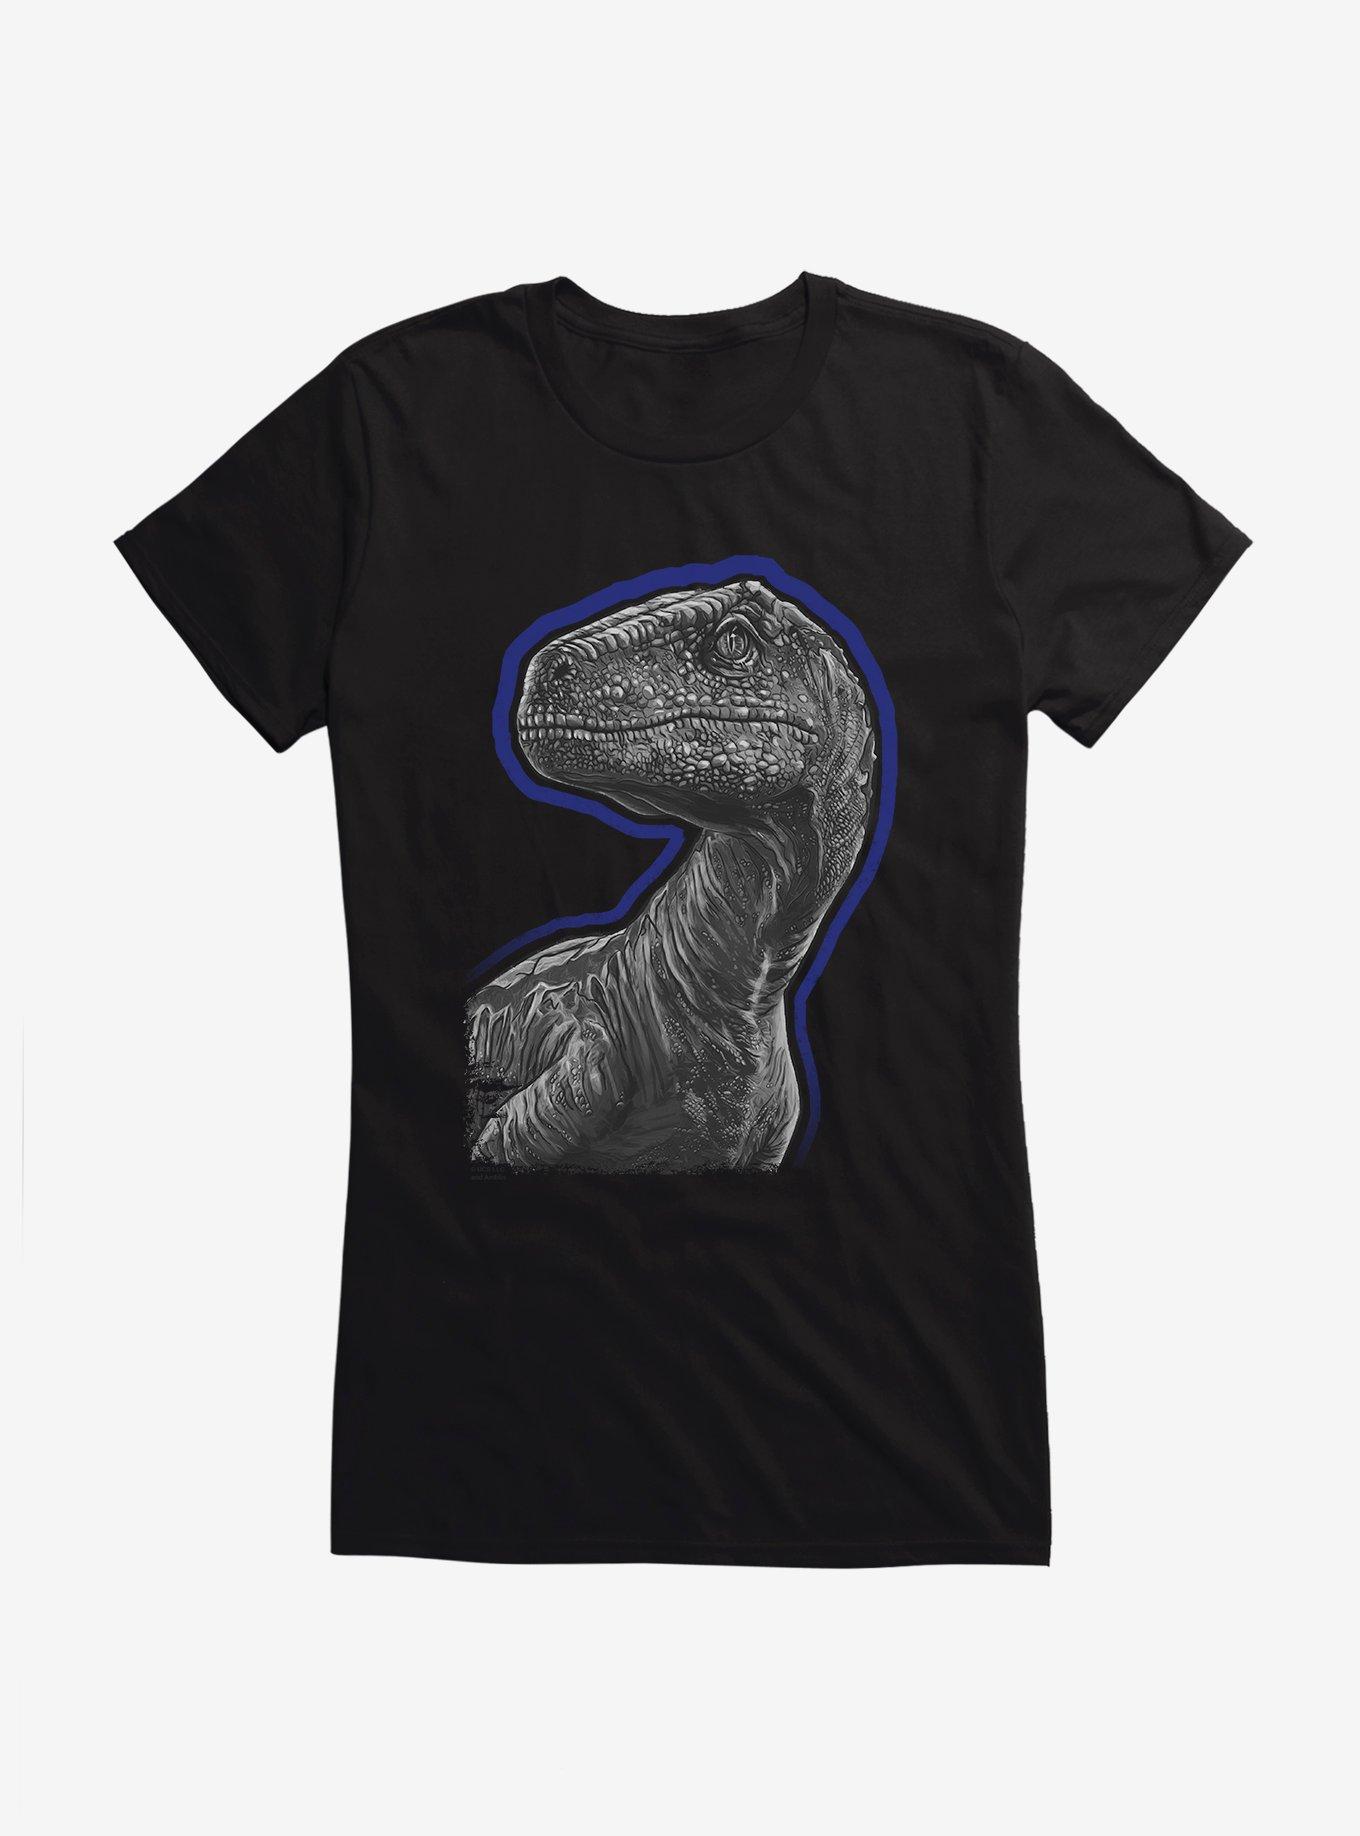 Jurassic World Velociraptor Outline Girl's T-Shirt